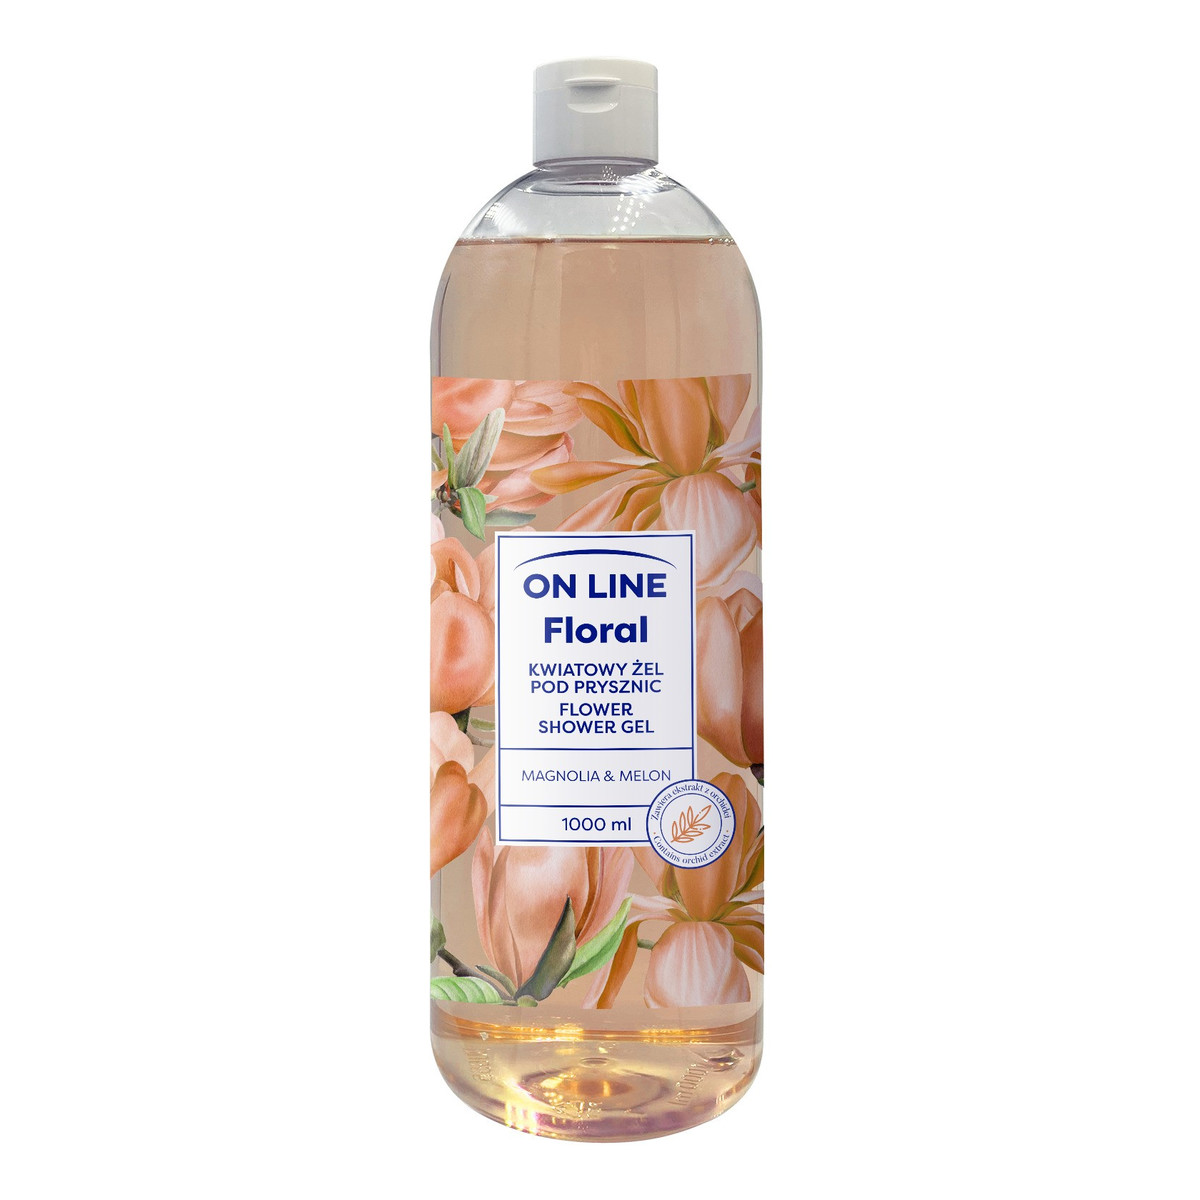 On Line Floral Kwiatowy żel pod prysznic - Magnolia & Melon 1000ml